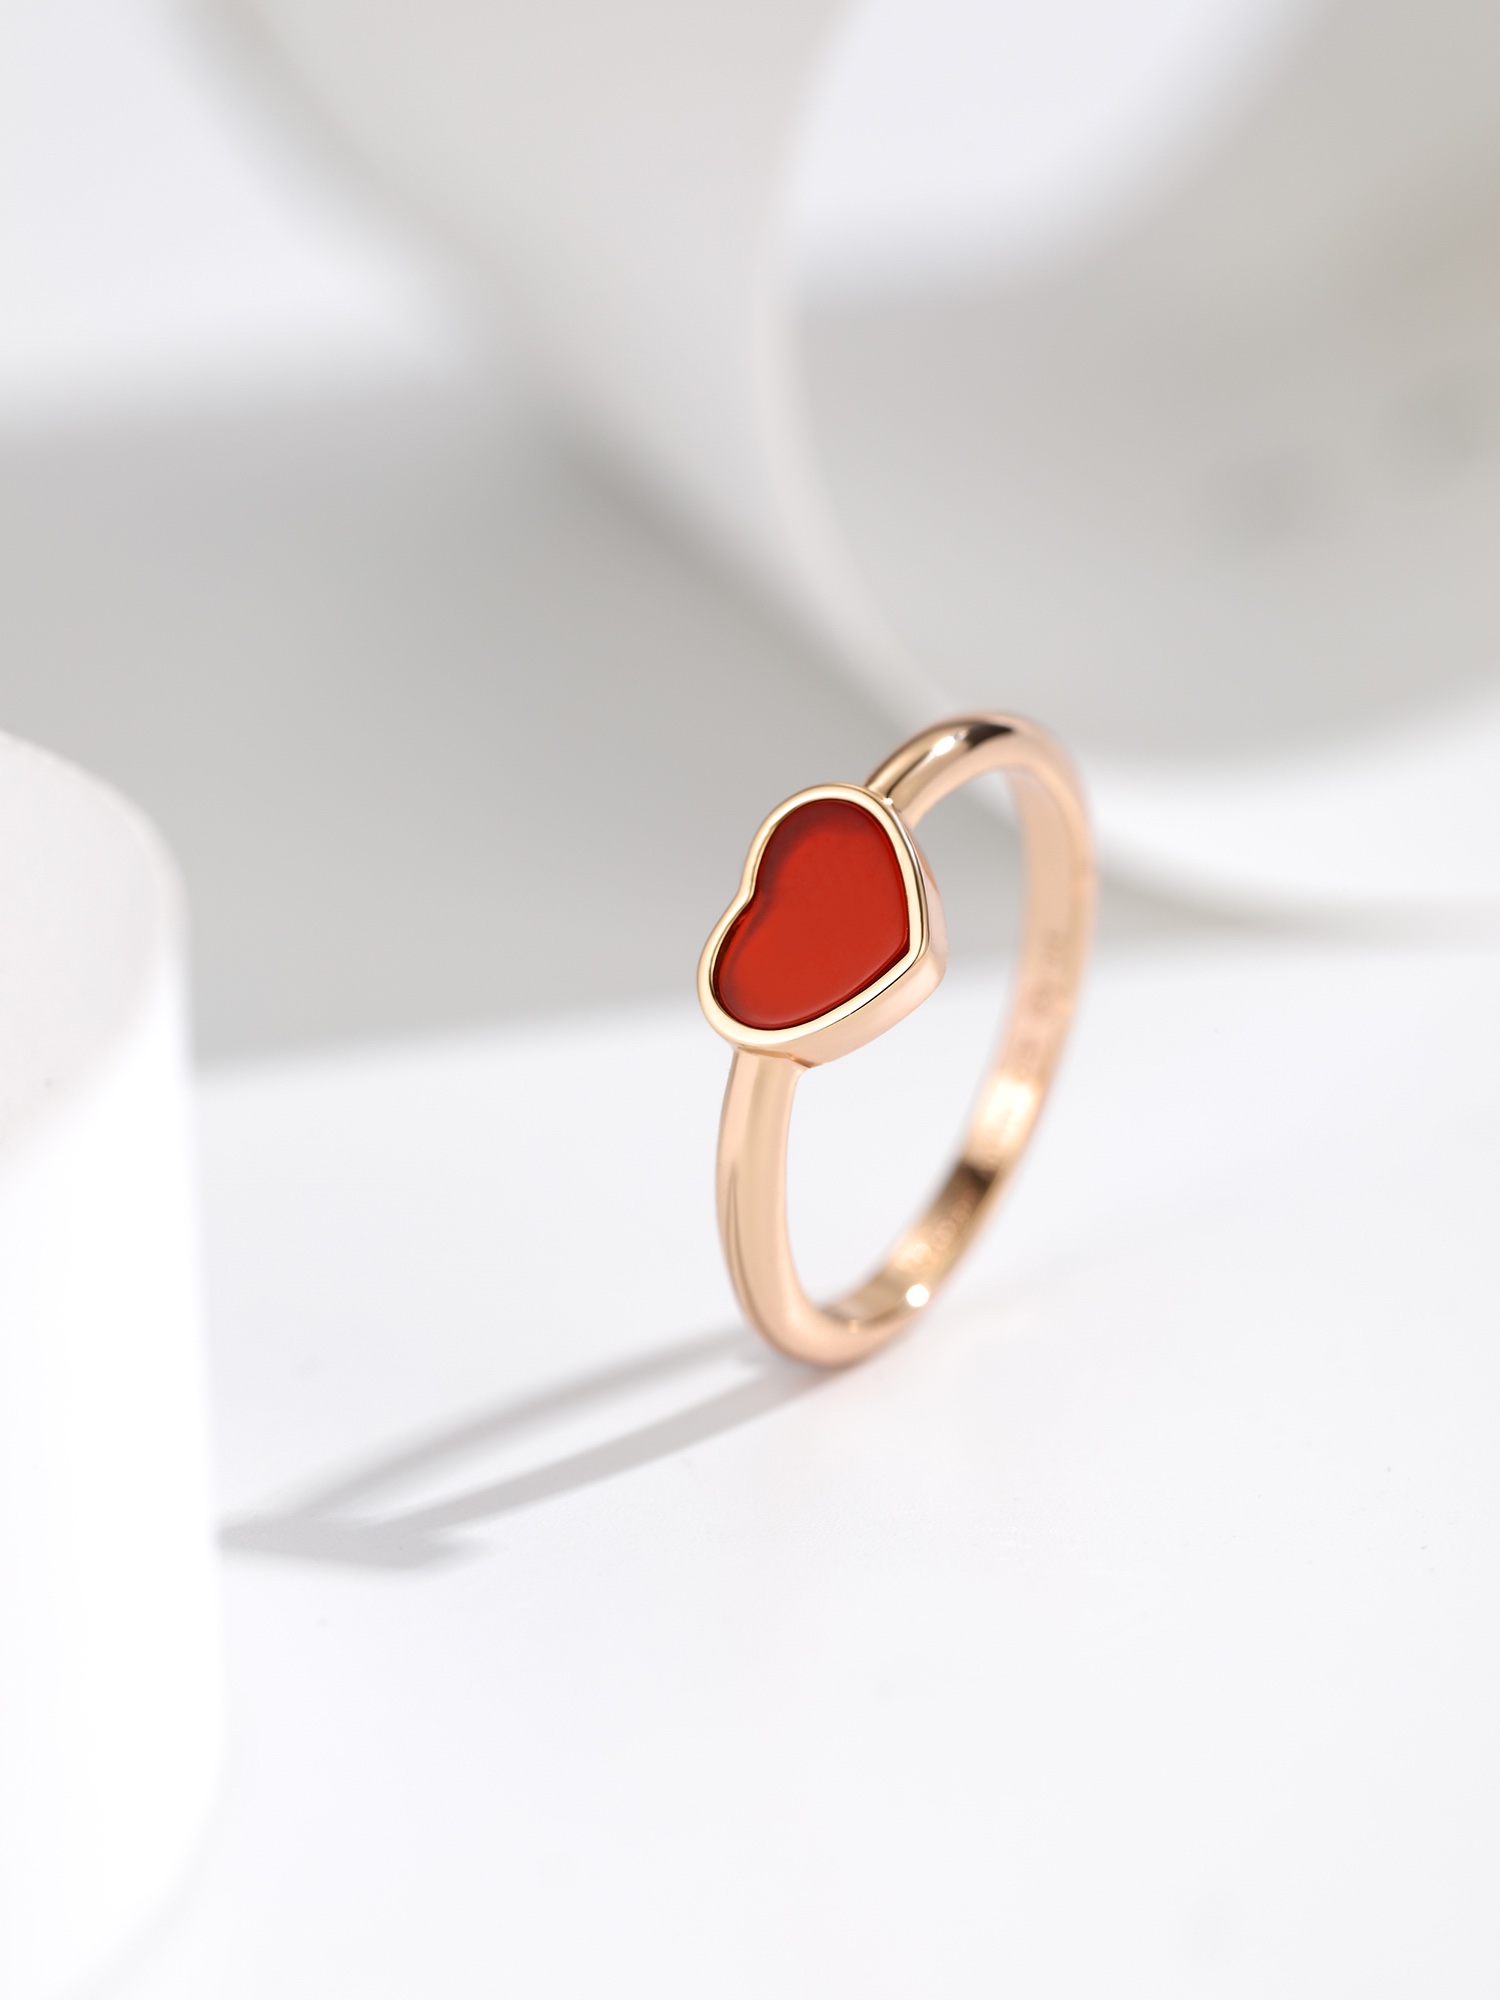 高版Happy Heart系列戒指设计都比较大方简单 爱心 红玉髓戒指单圈的看起来简单 也水超复杂的设计工艺 采用v金制作 超厚电镀